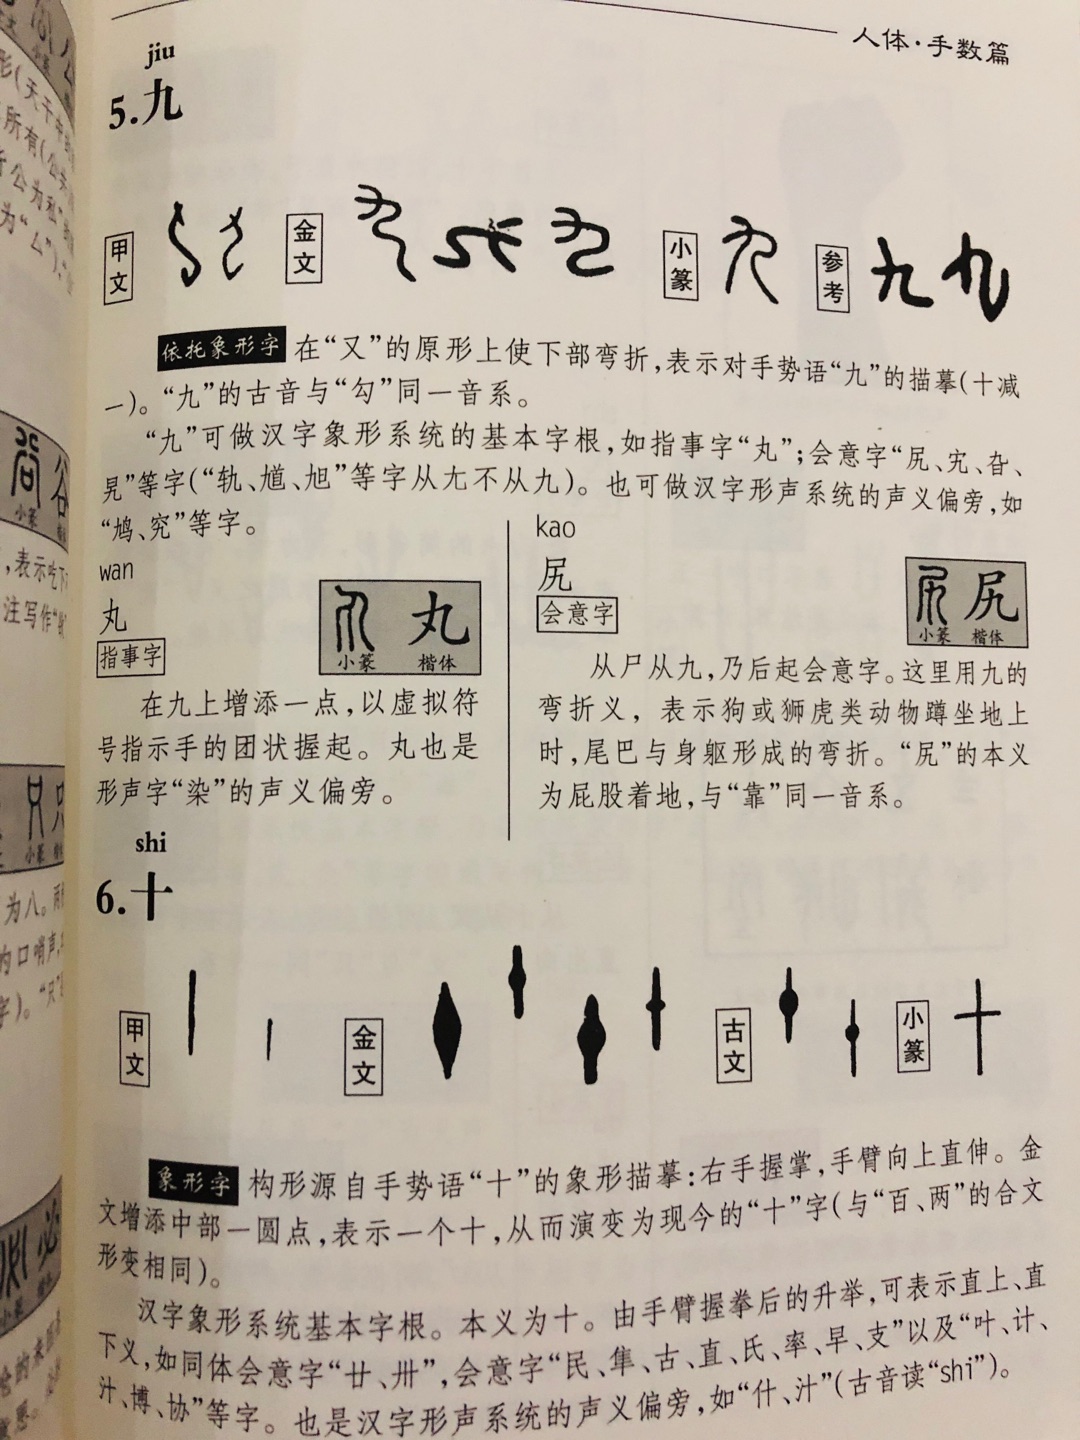 一个从字根的角度分析汉字的产生、发展历程，从逻辑学的角度来分析汉字，揭开汉字的造字之谜。